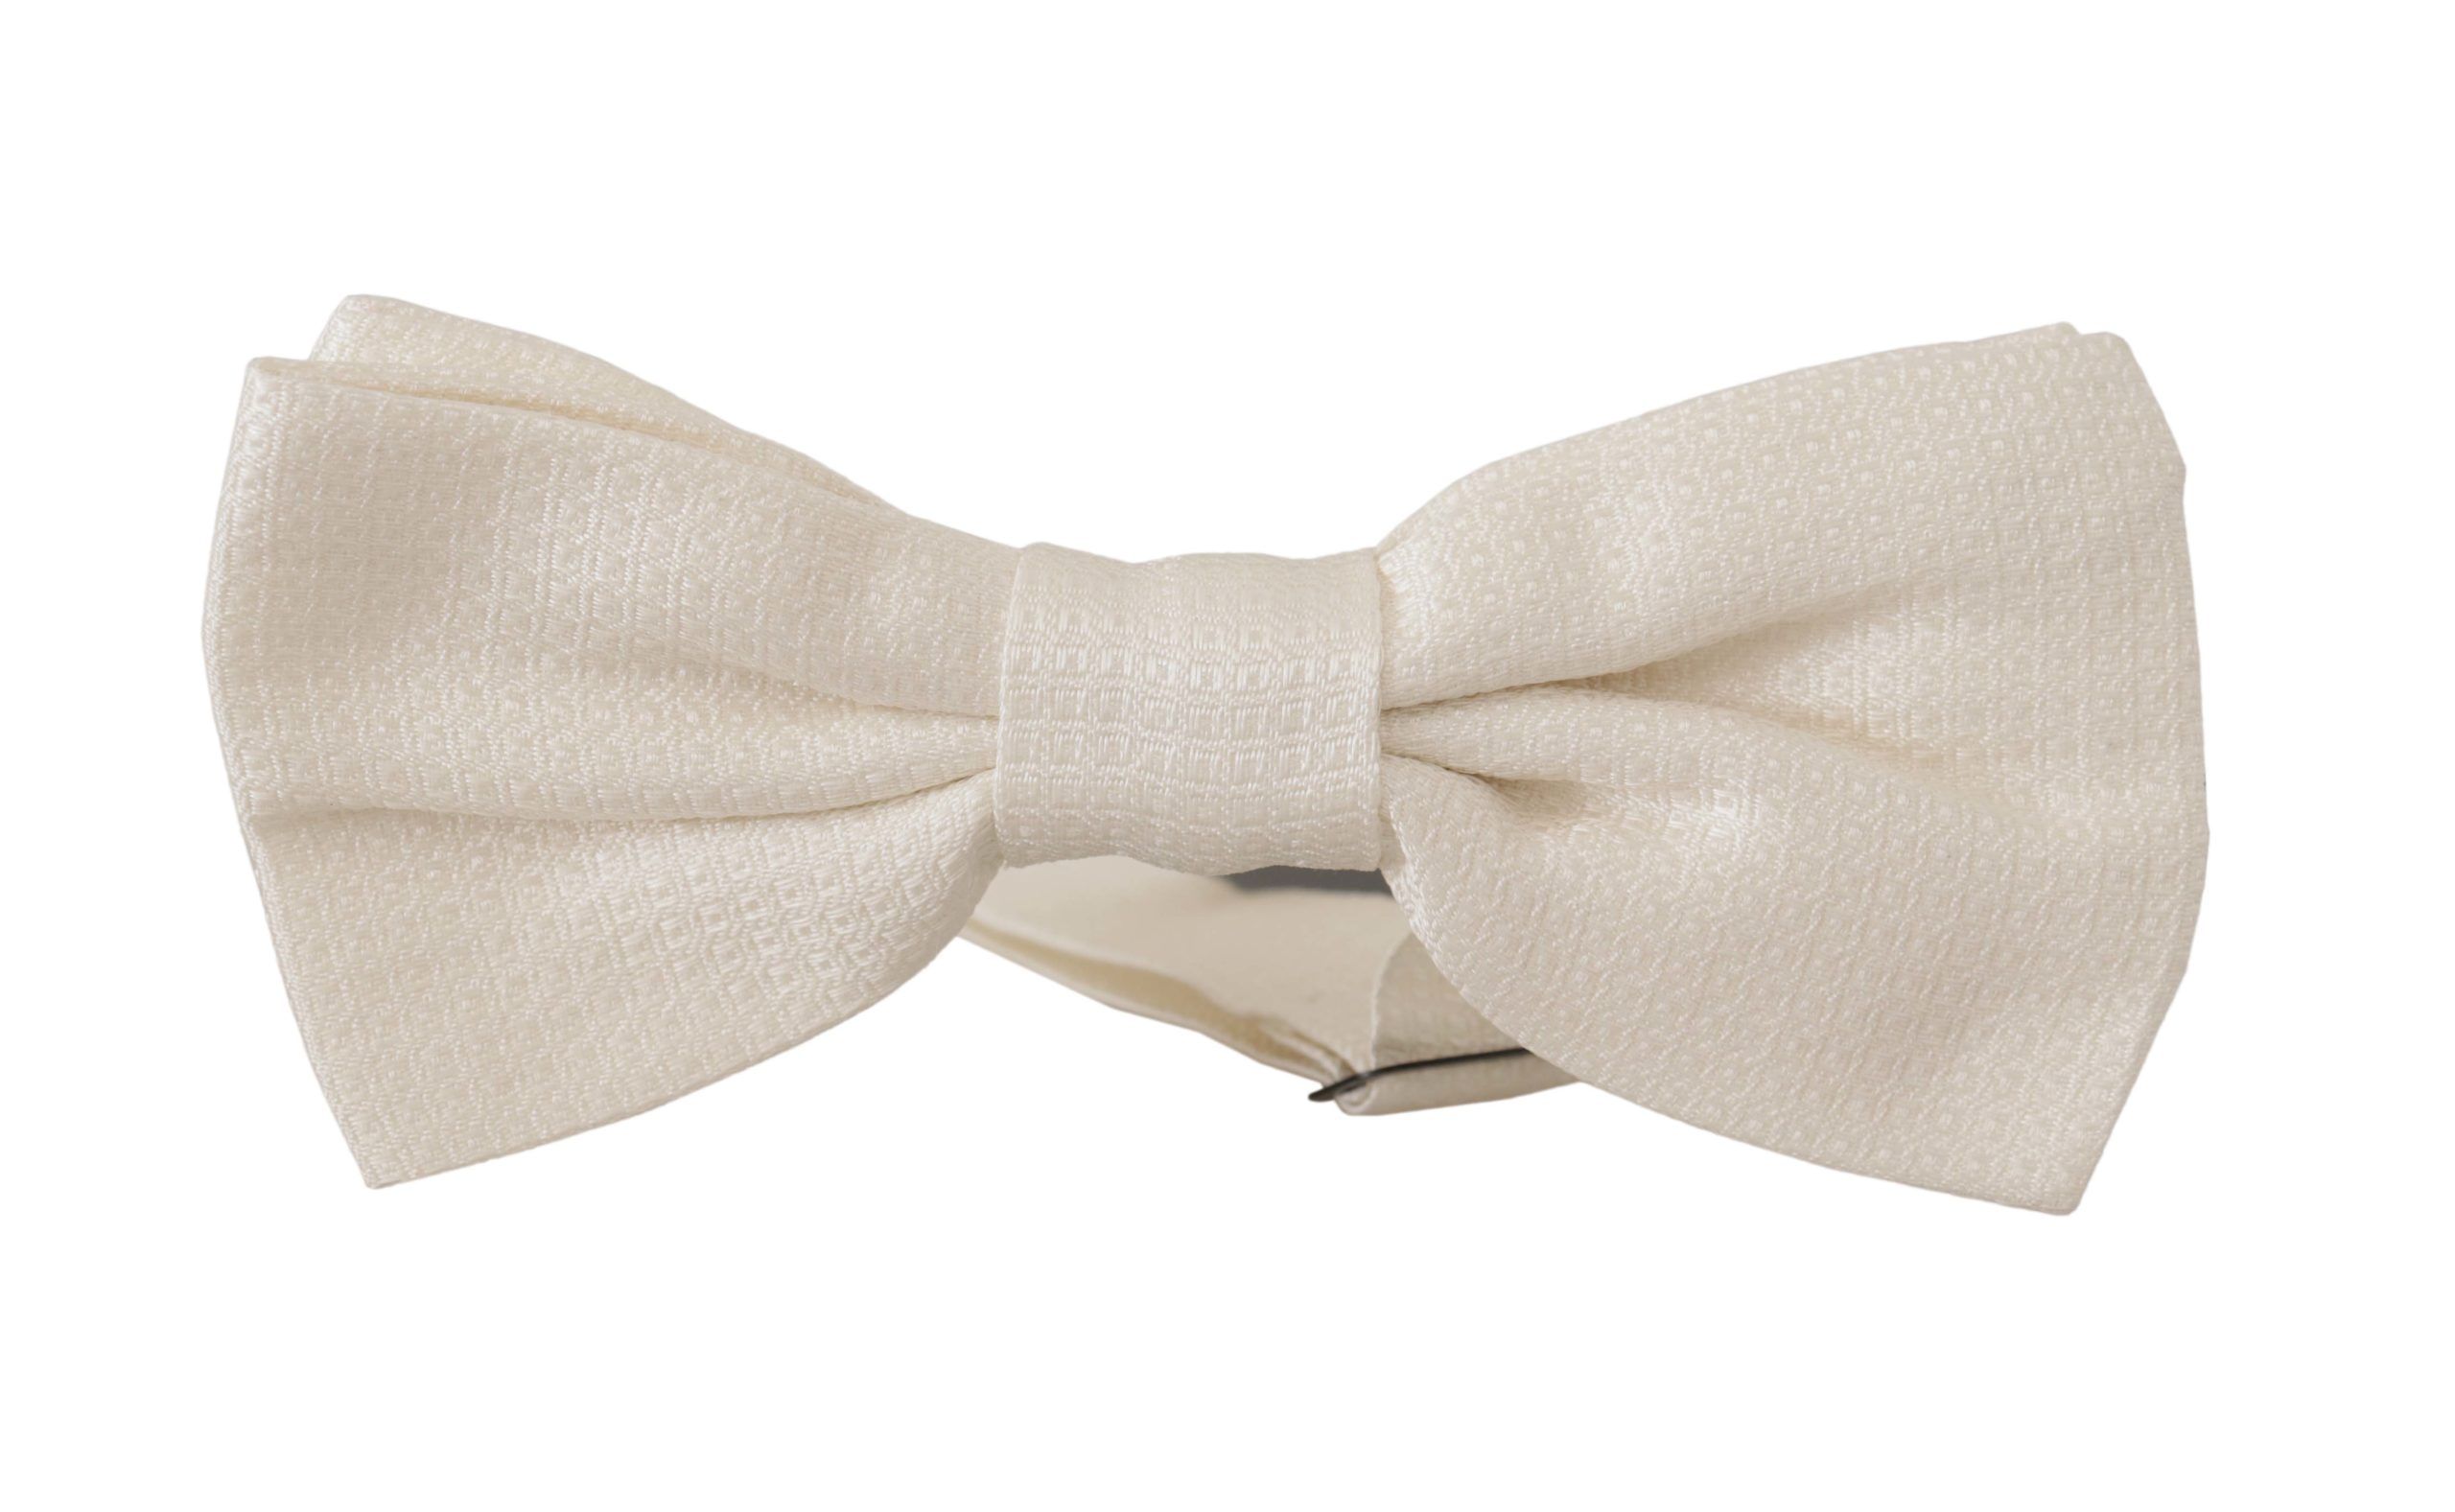 Elegant Off White Silk Bow Tie